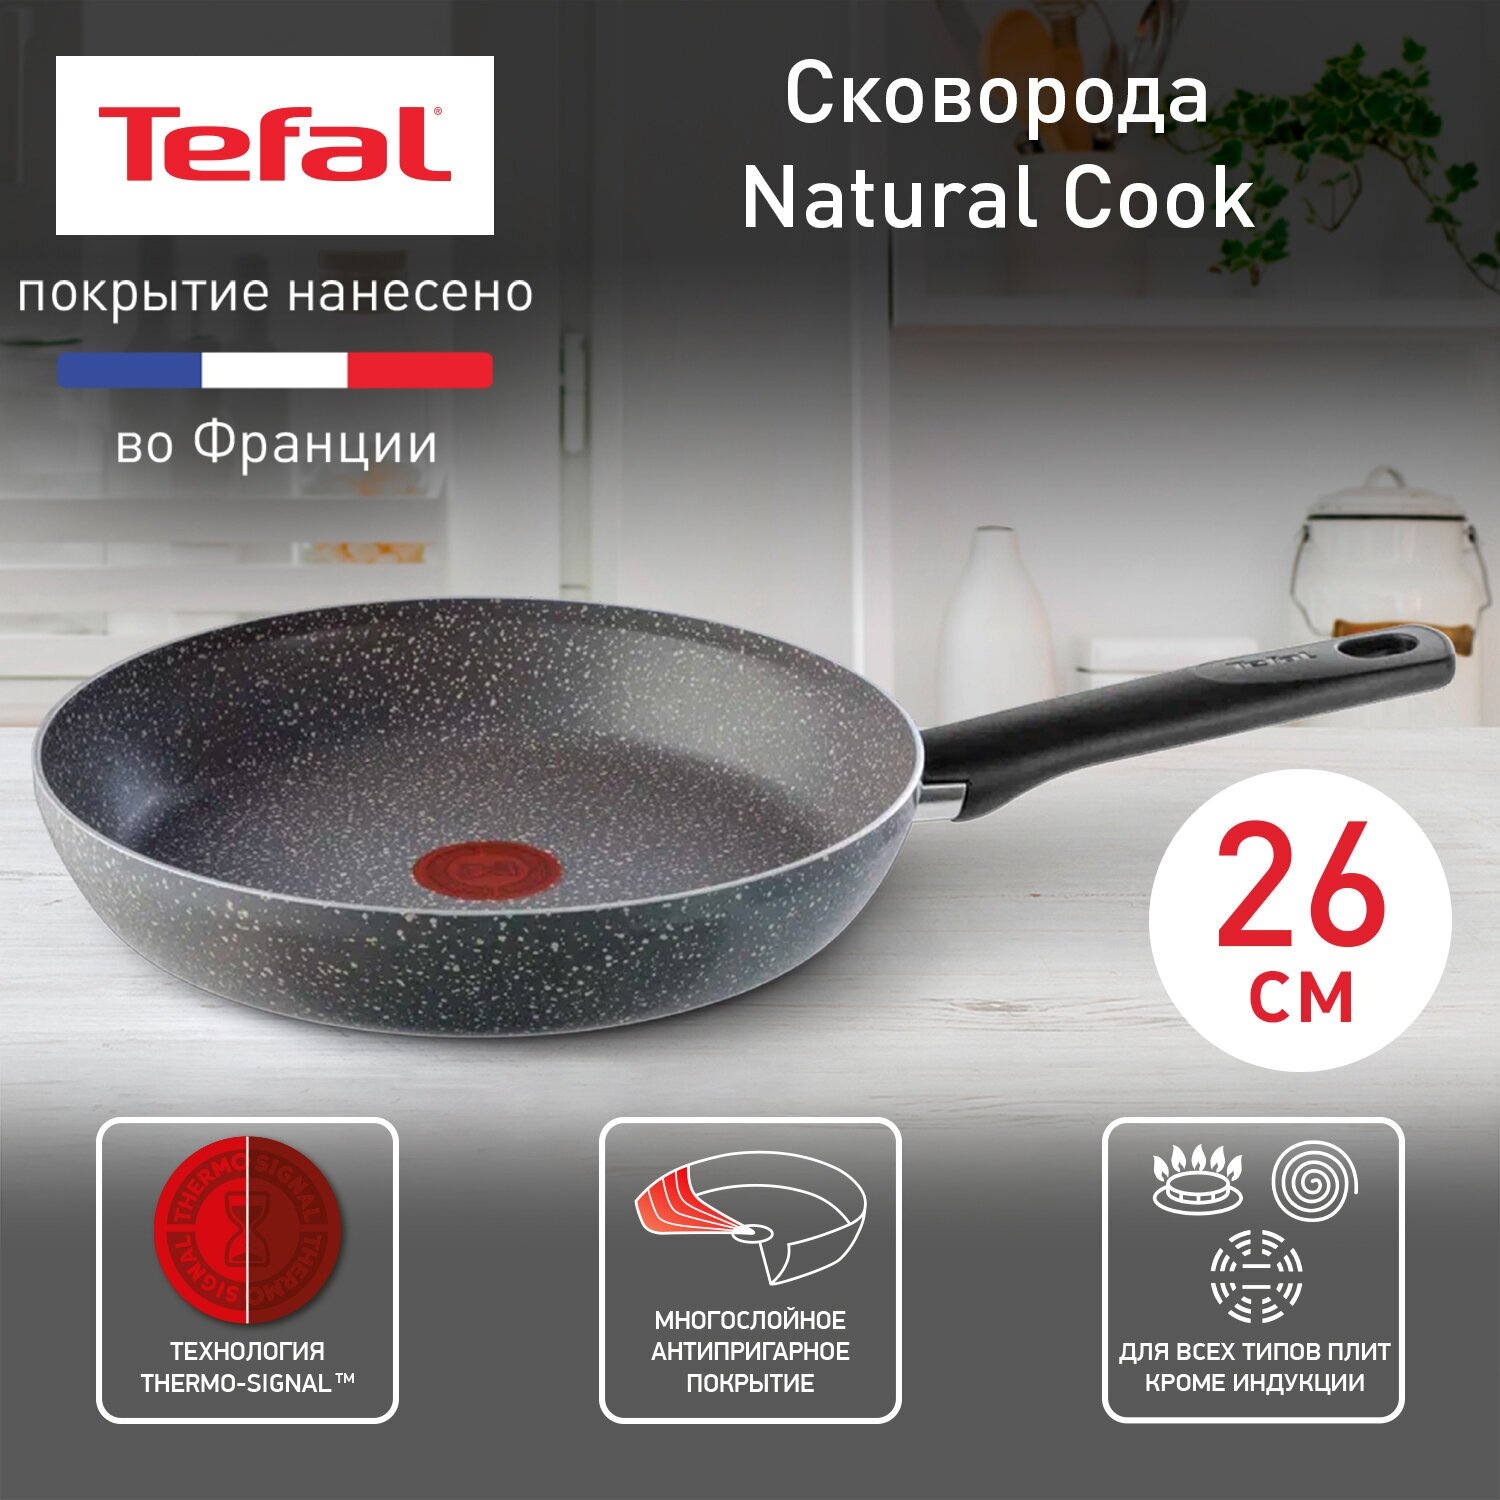 Сковорода Tefal Natural Cook